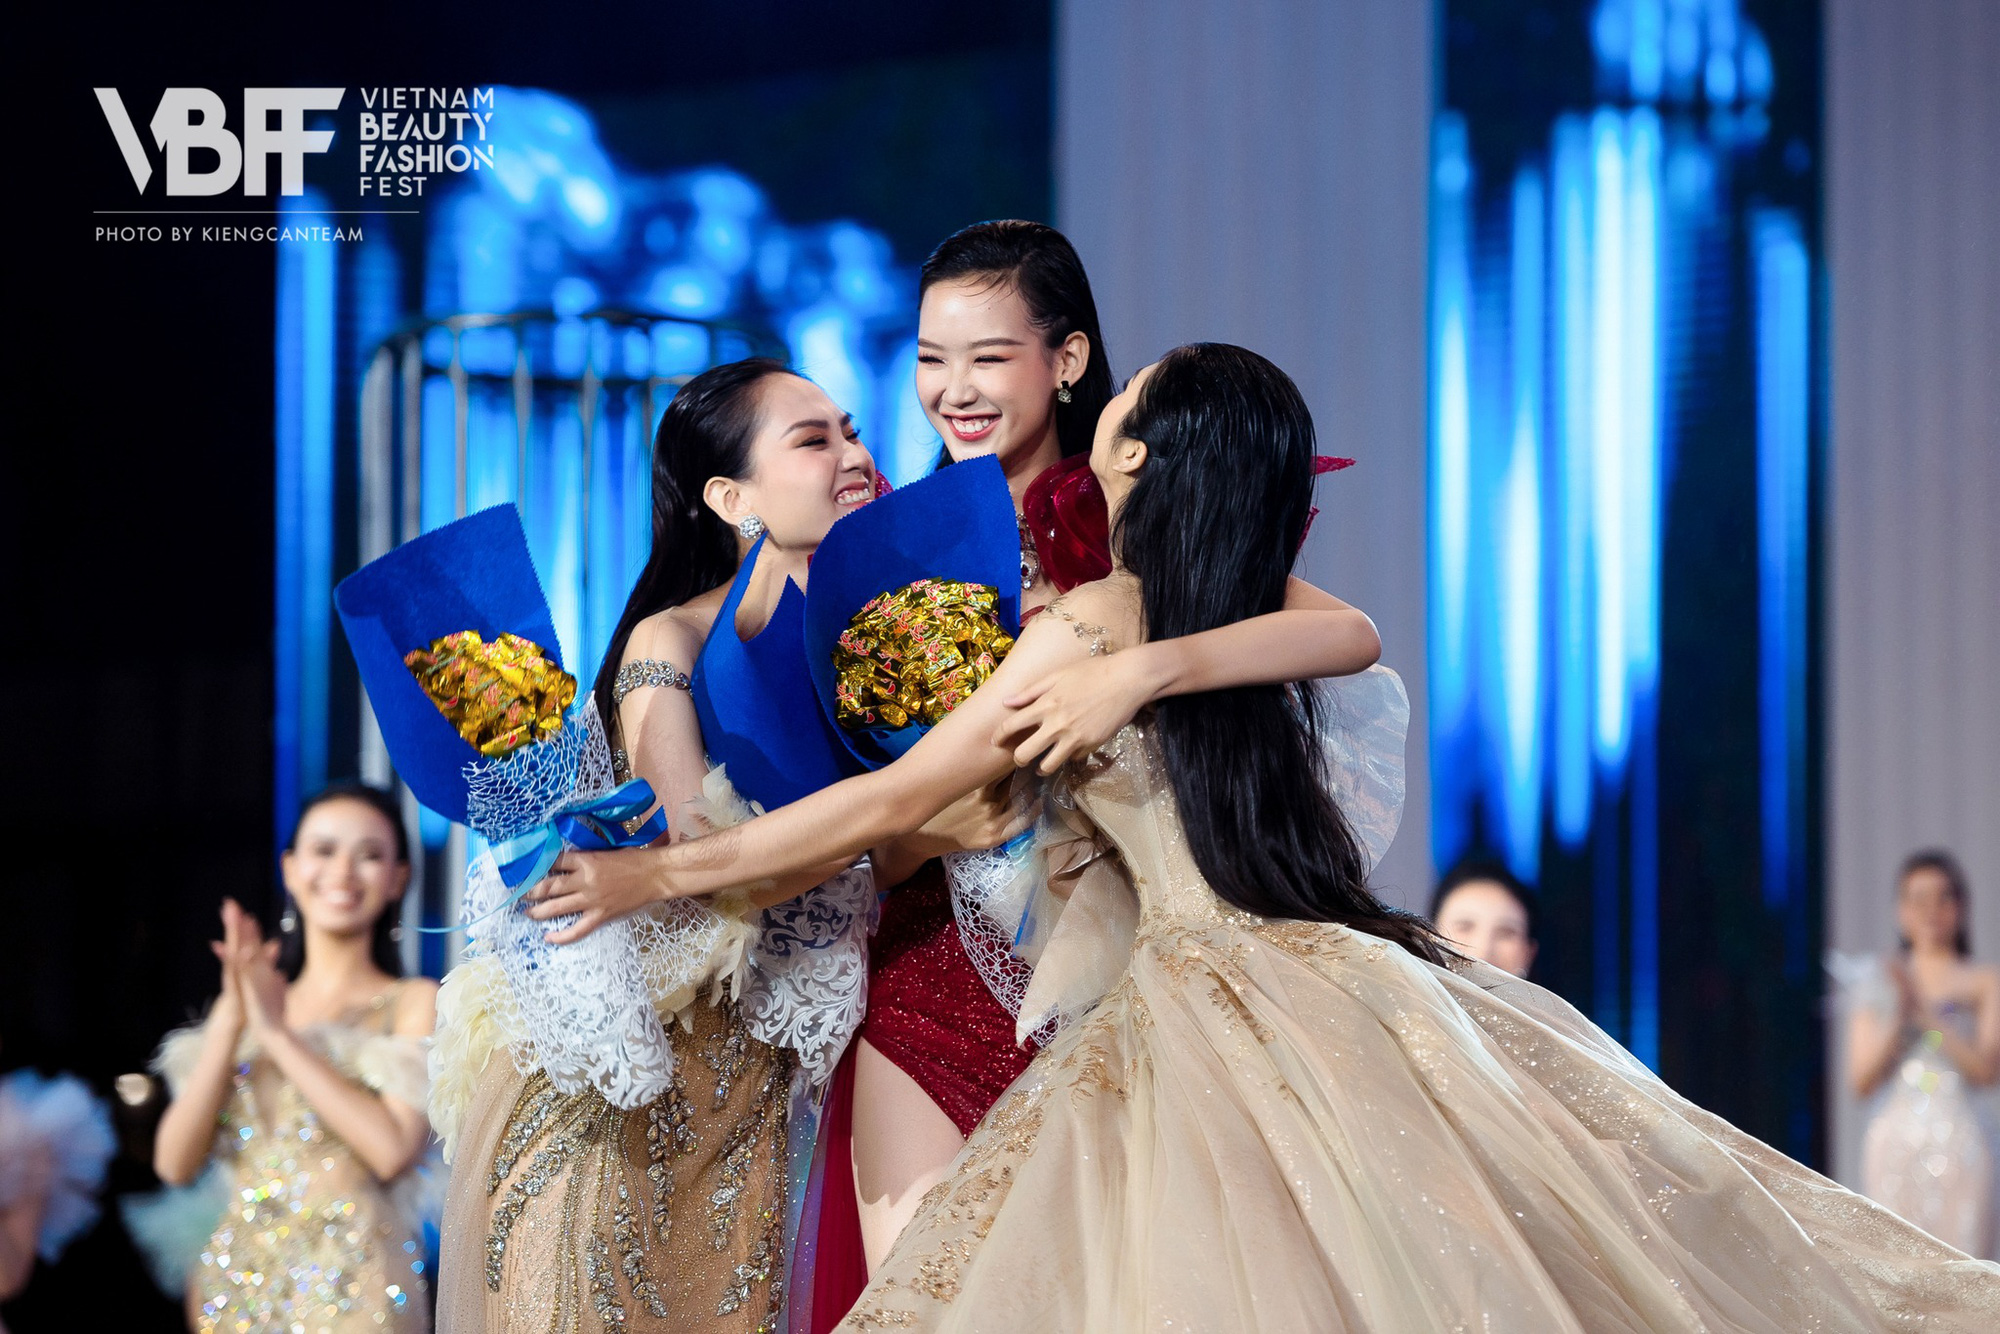 Đọ sắc cùng thí sinh đầu tiên vào top 20 Miss World Việt, Lương Thuỳ Linh bị lấn át 1 điều nhưng đây là điểm cứu lại! - Ảnh 4.